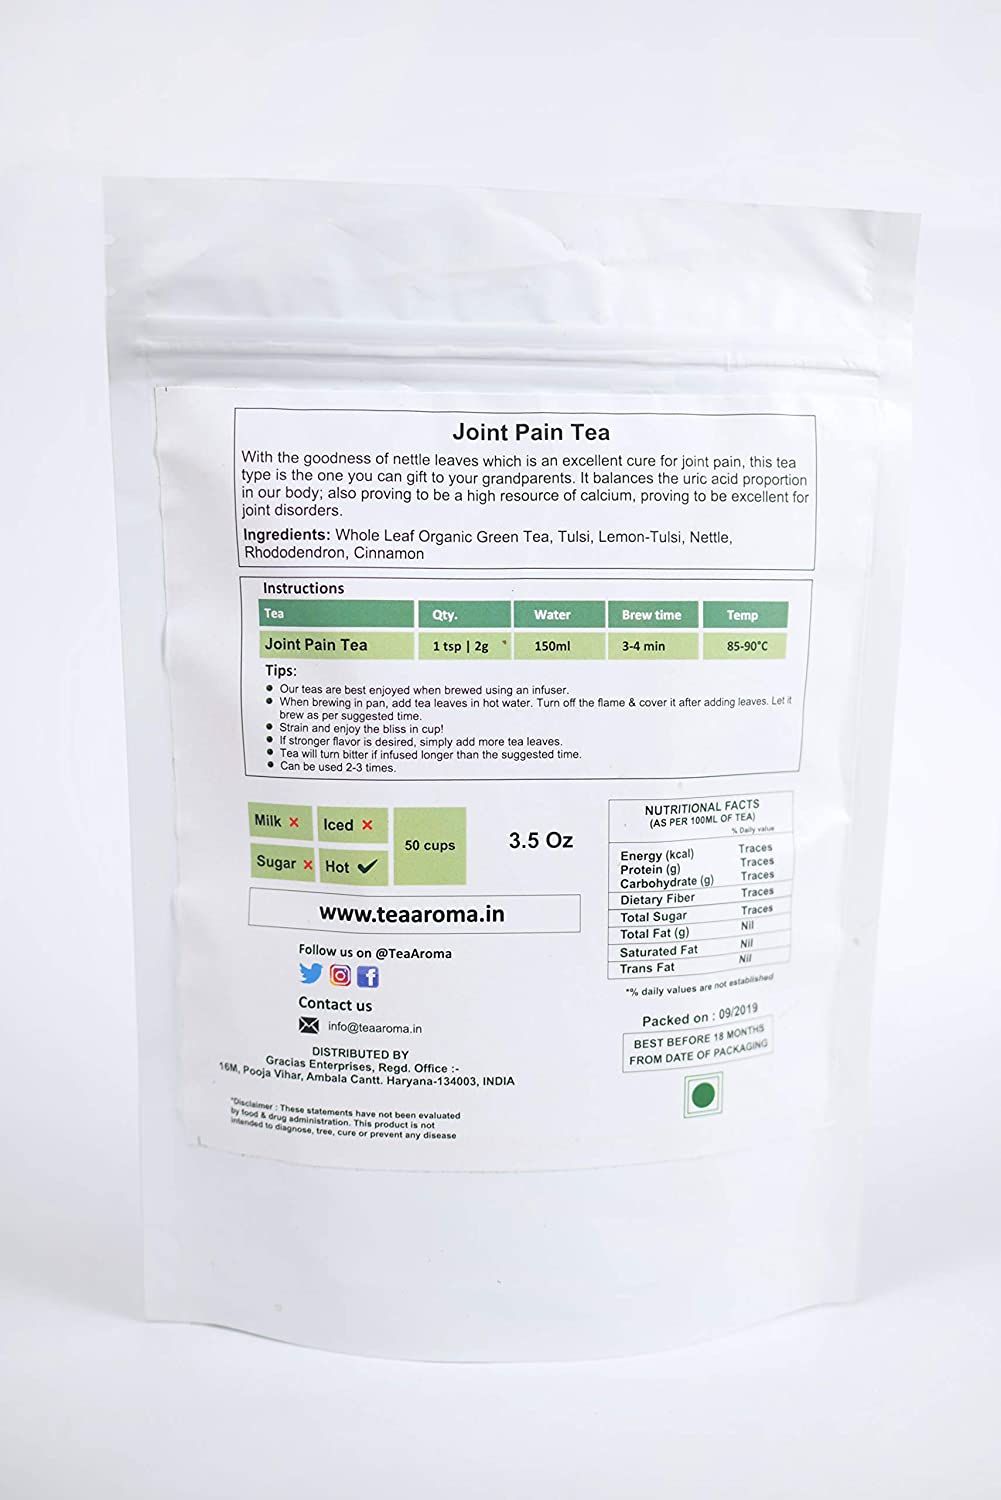 Tea Aroma Joint Pain Tea Image